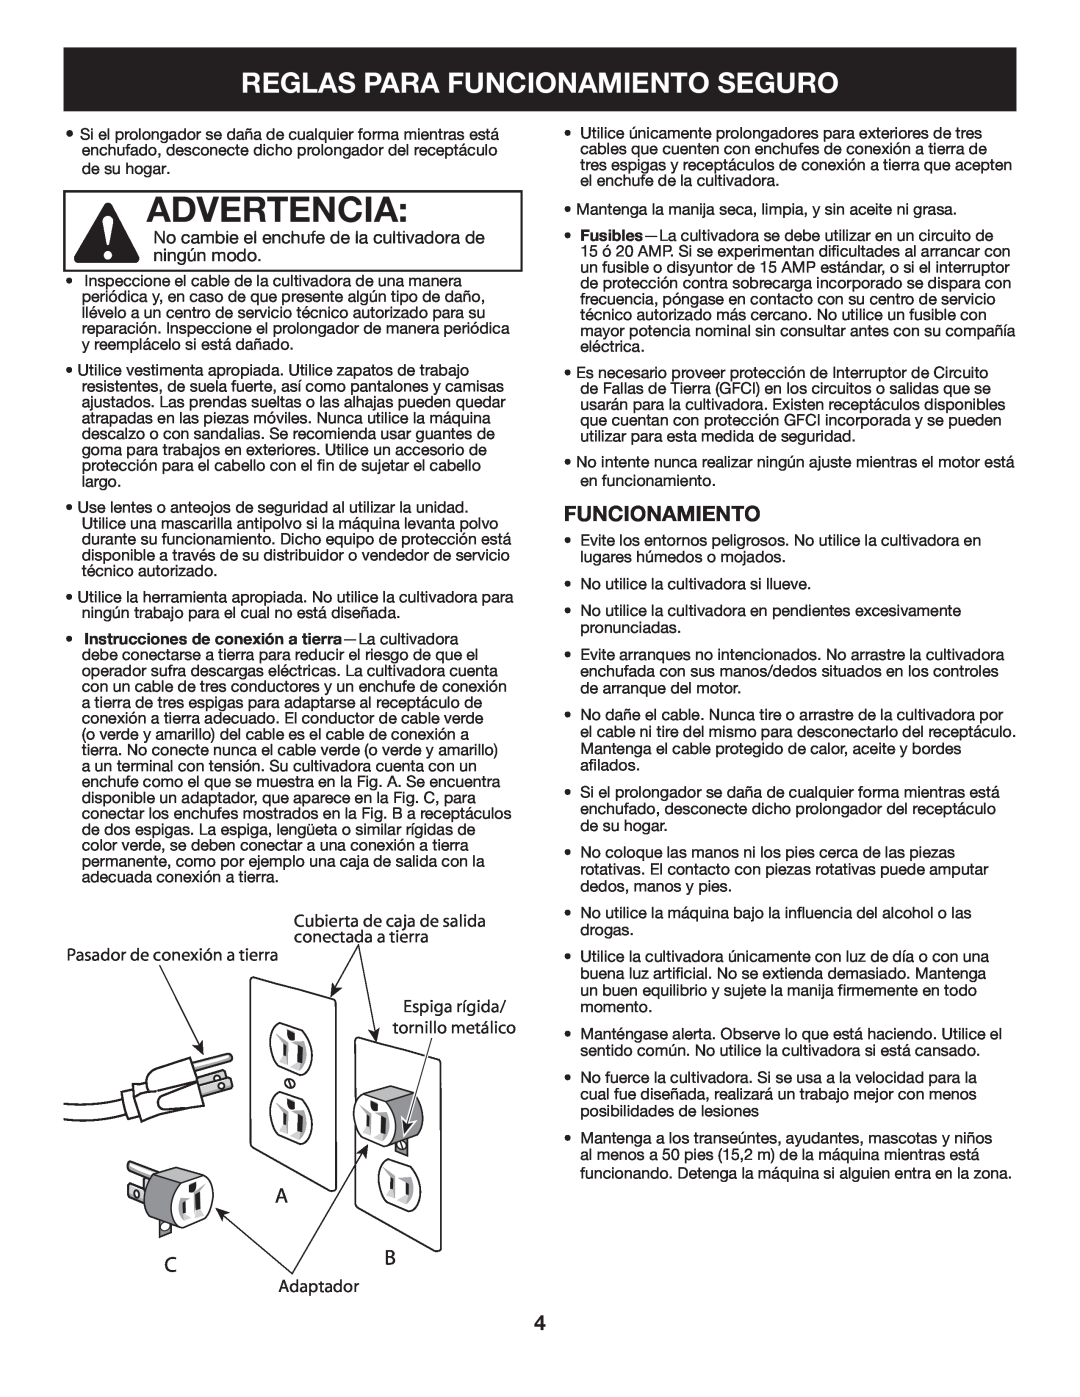 Craftsman 316.2926 manual Advertencia, Reglas Para Funcionamiento Seguro, Cubierta de caja de salida conectada a tierra 